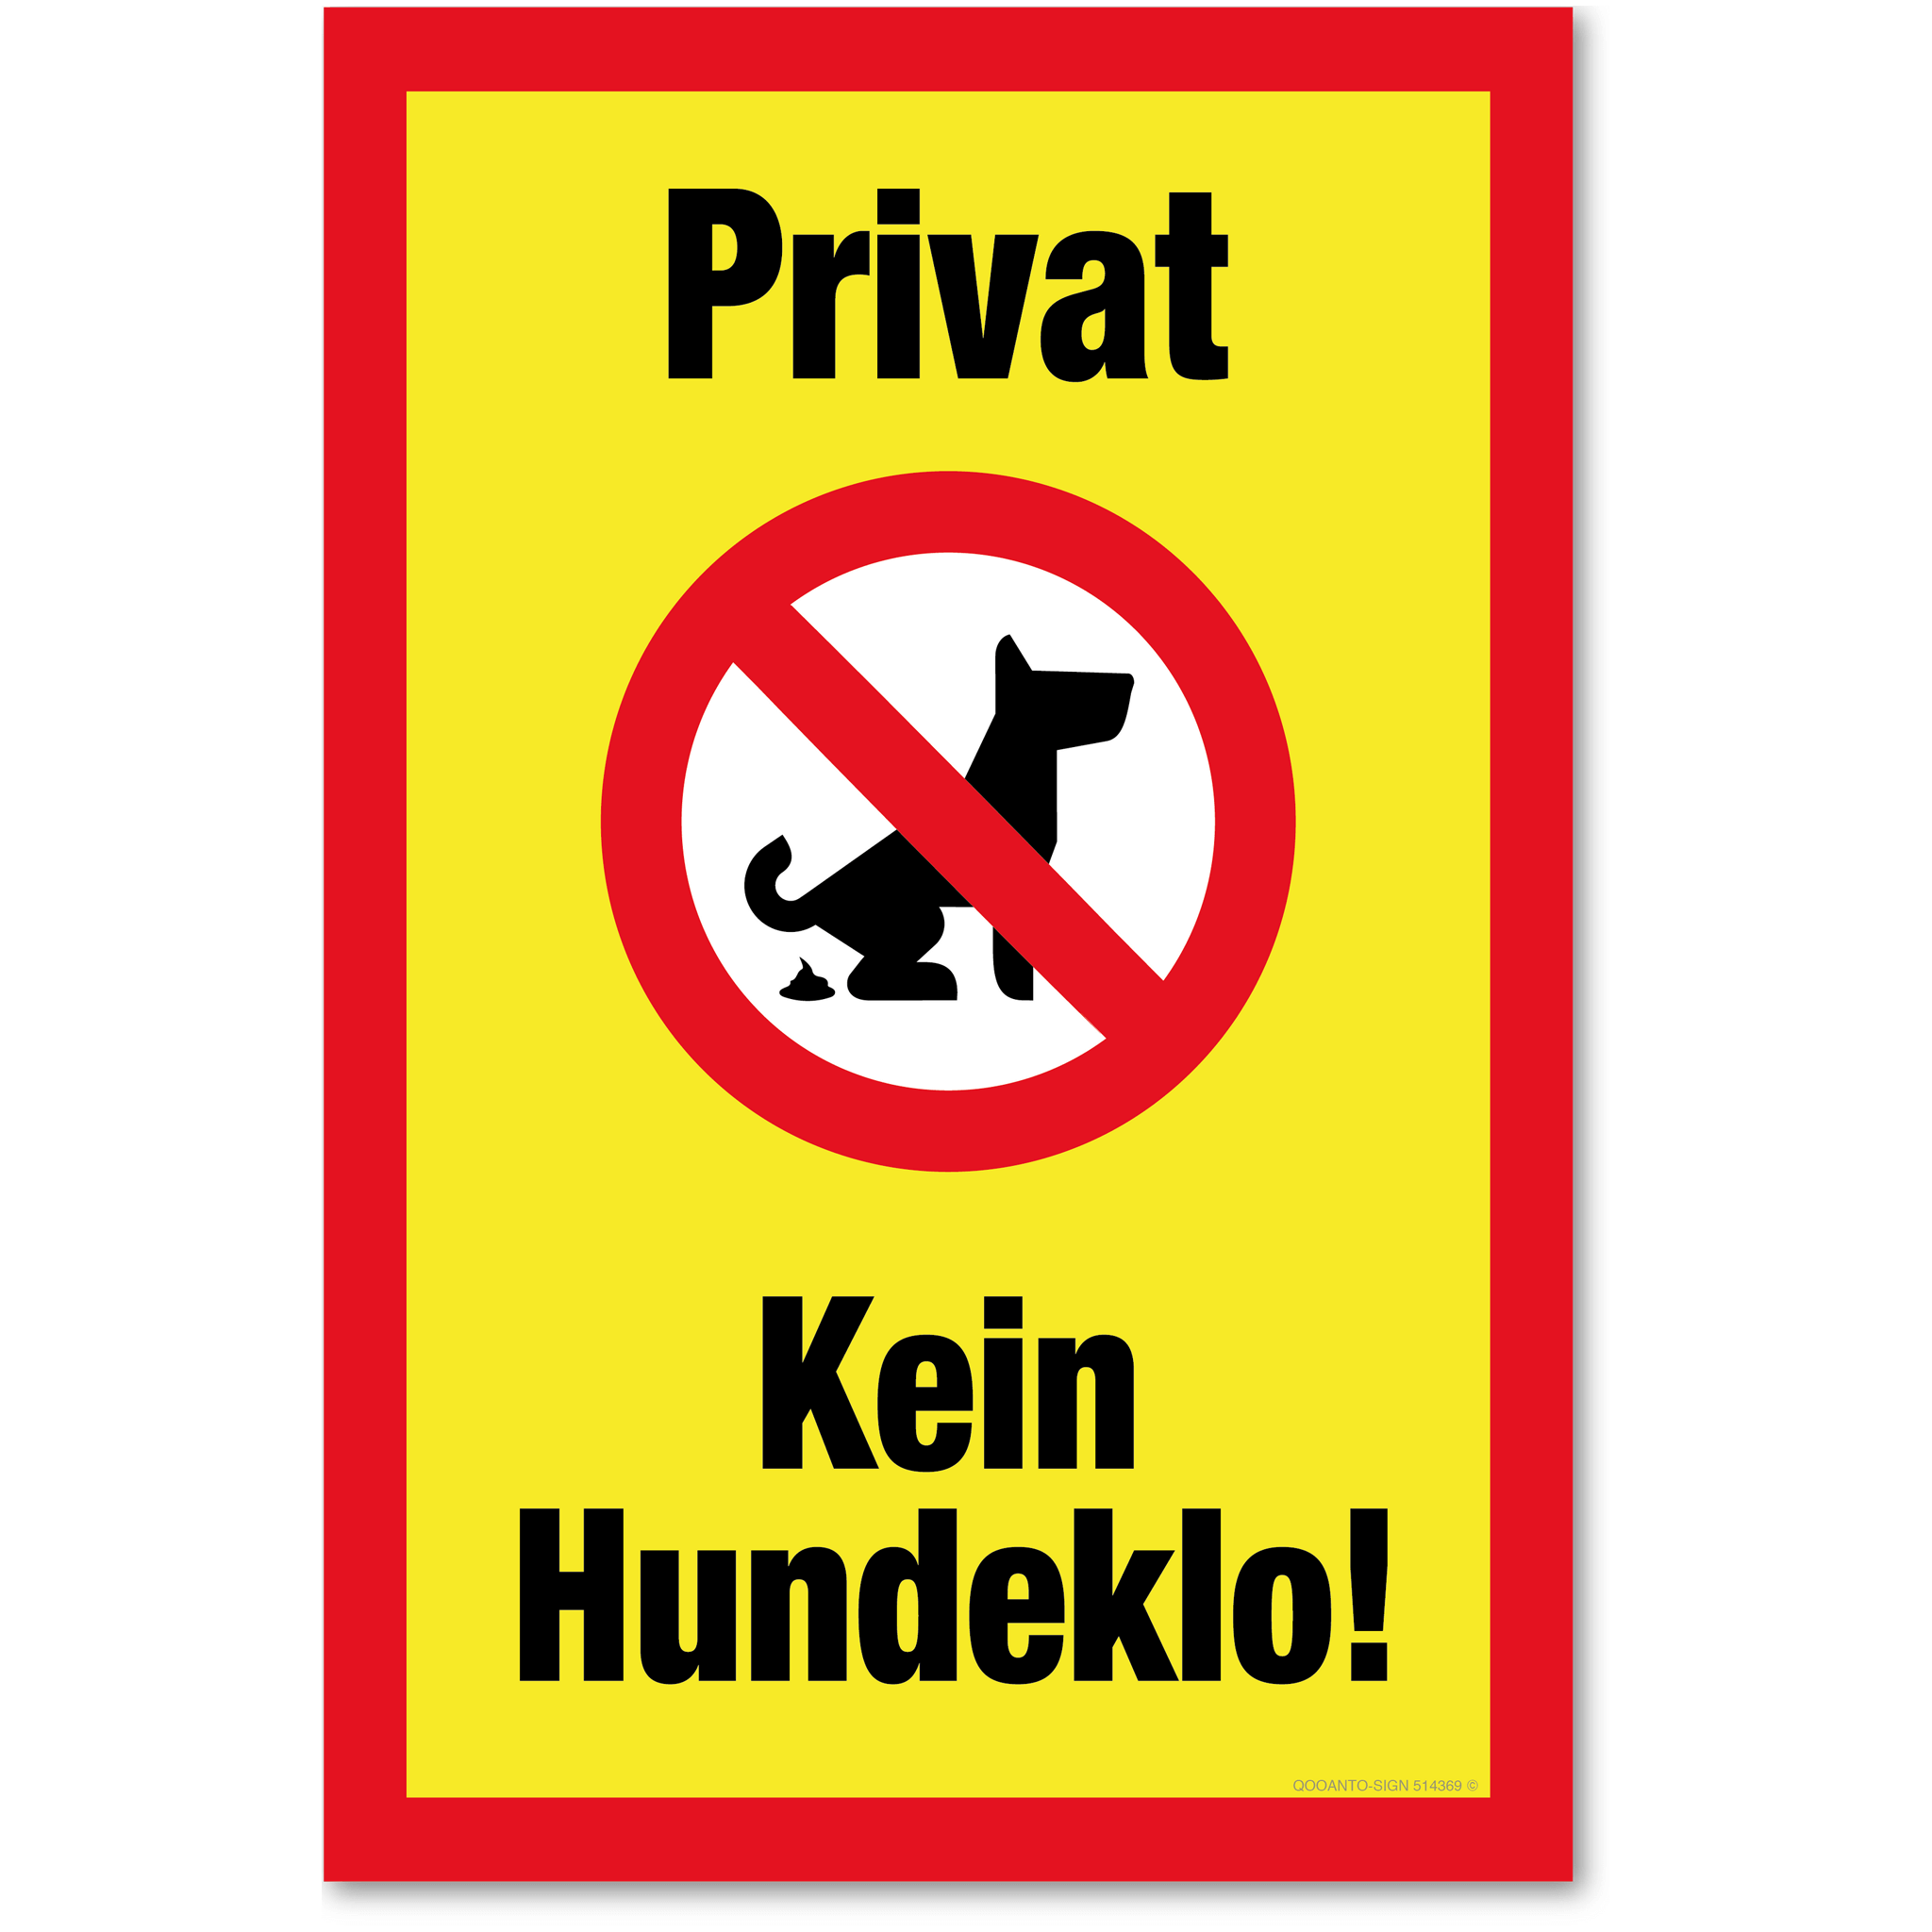 Privat - Kein Hundeklo, gelb, Schild oder Aufkleber